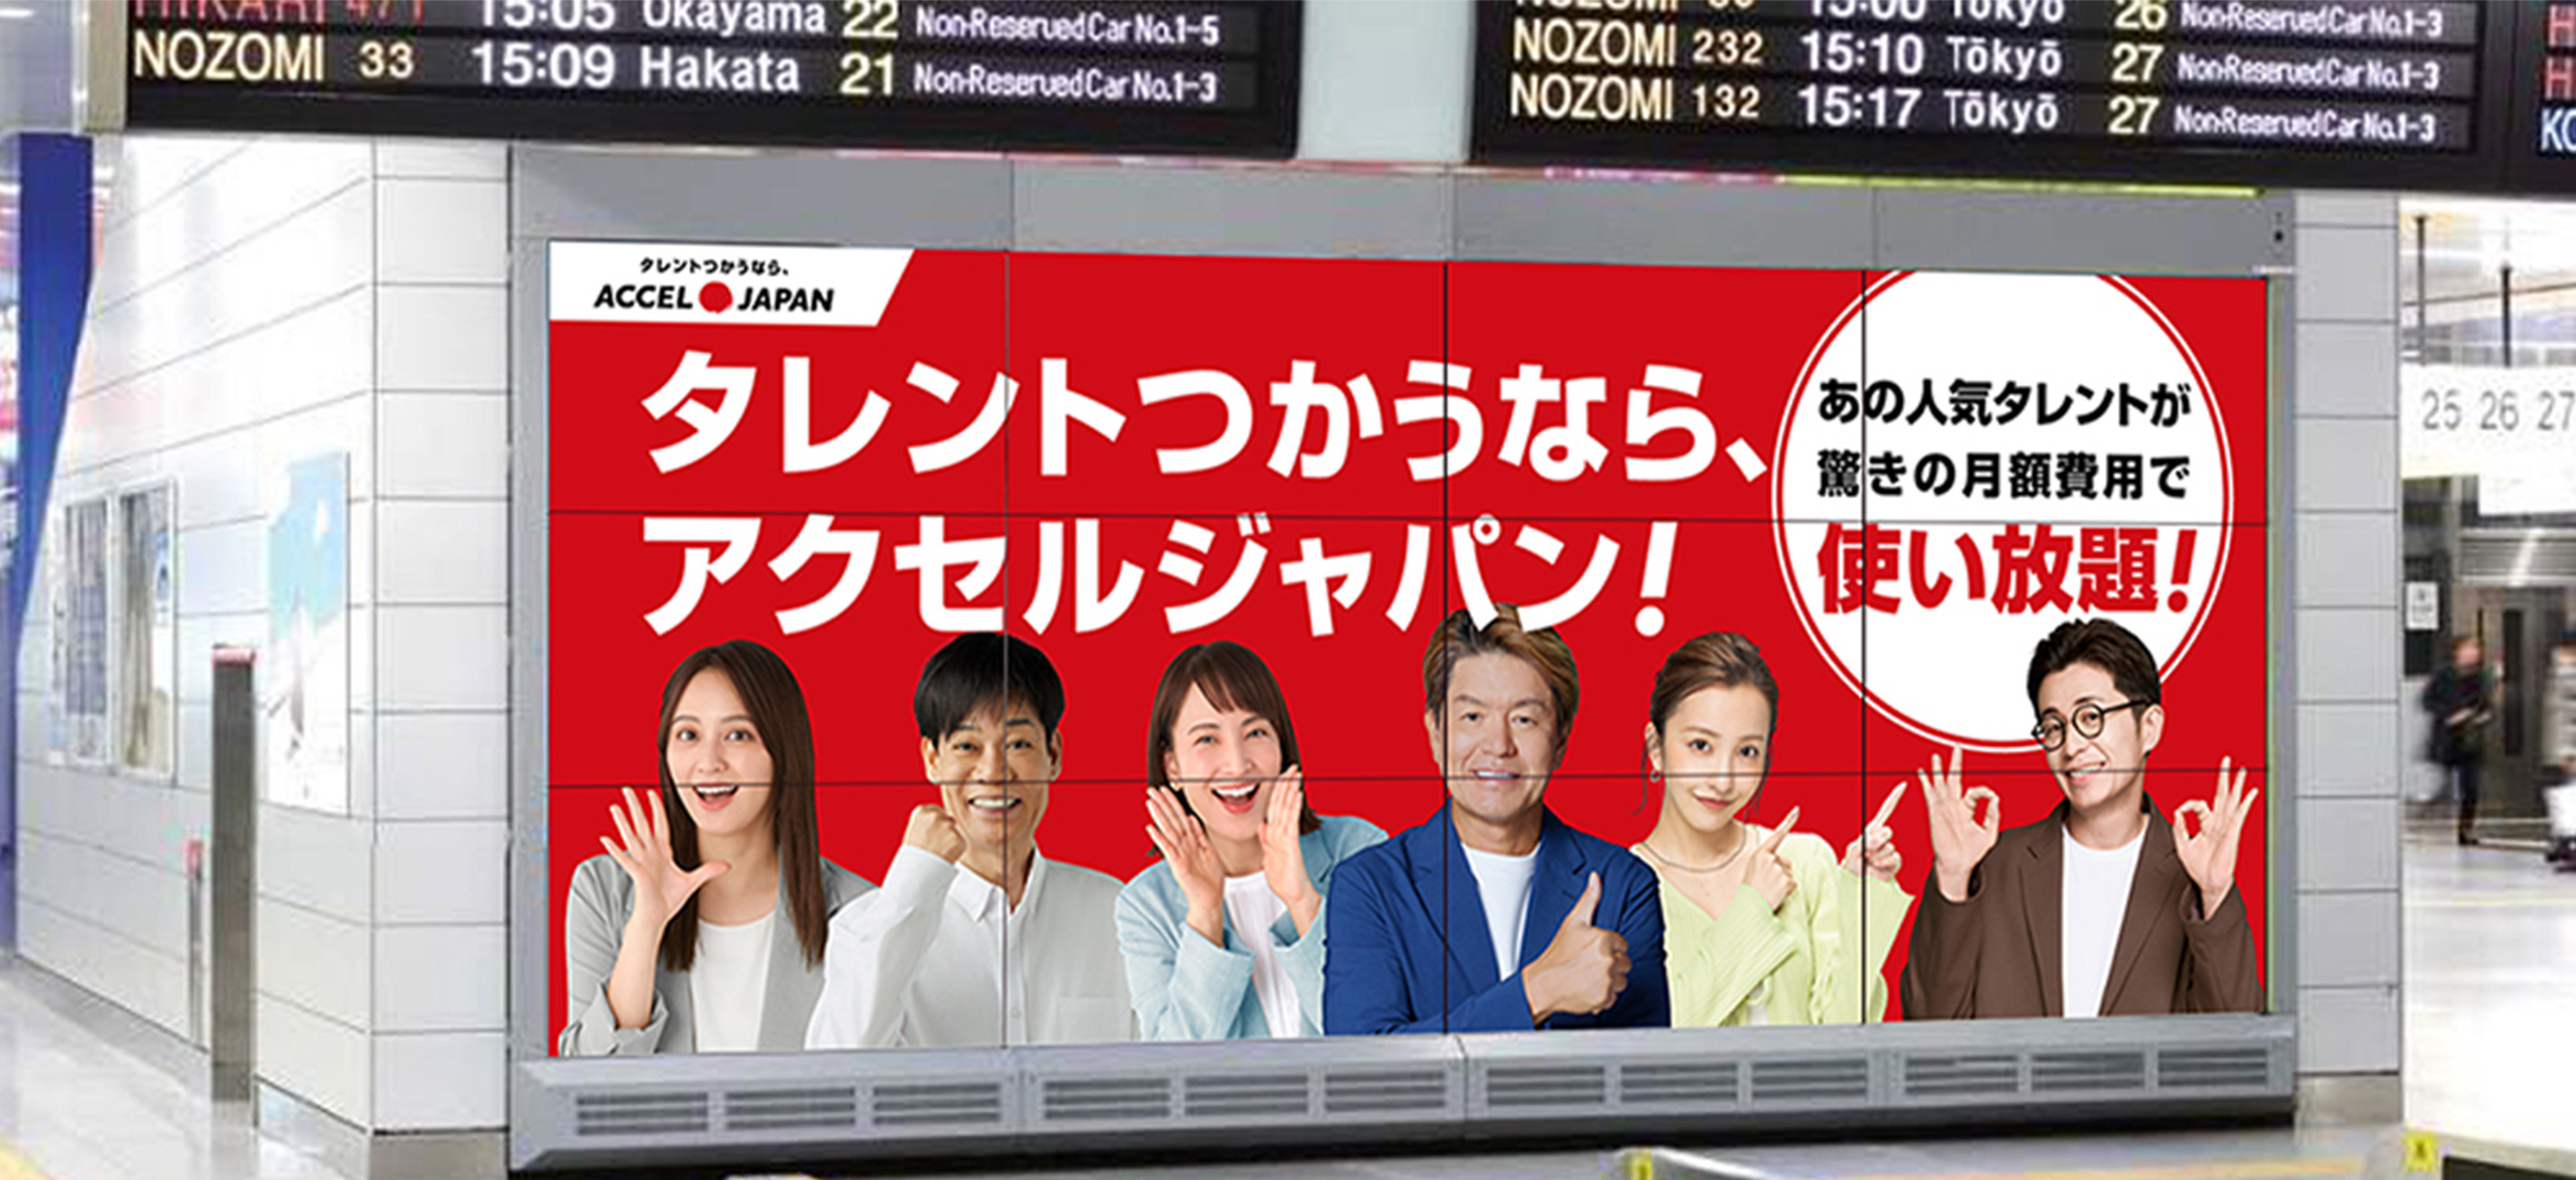 2月1日より大阪の主要駅サイネージ・関西5県でタクシー広告を順次展開